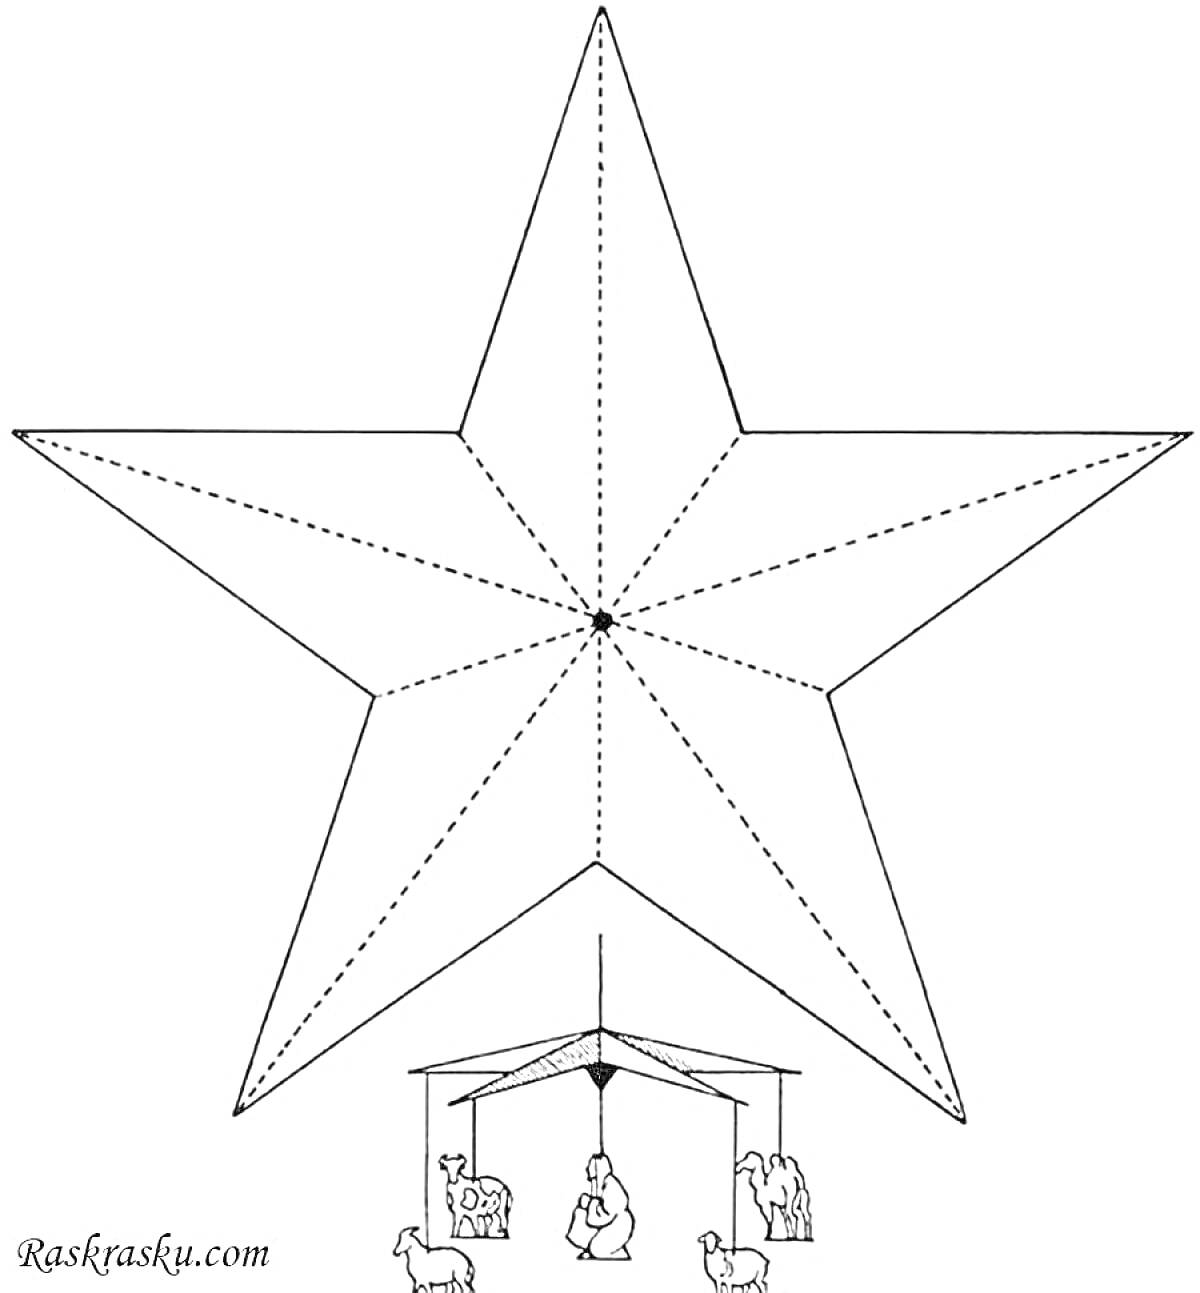 Раскраска Звезда Рождественская с изображением сцены Рождества Христова под ней (ясли, младенец, родители, животные)